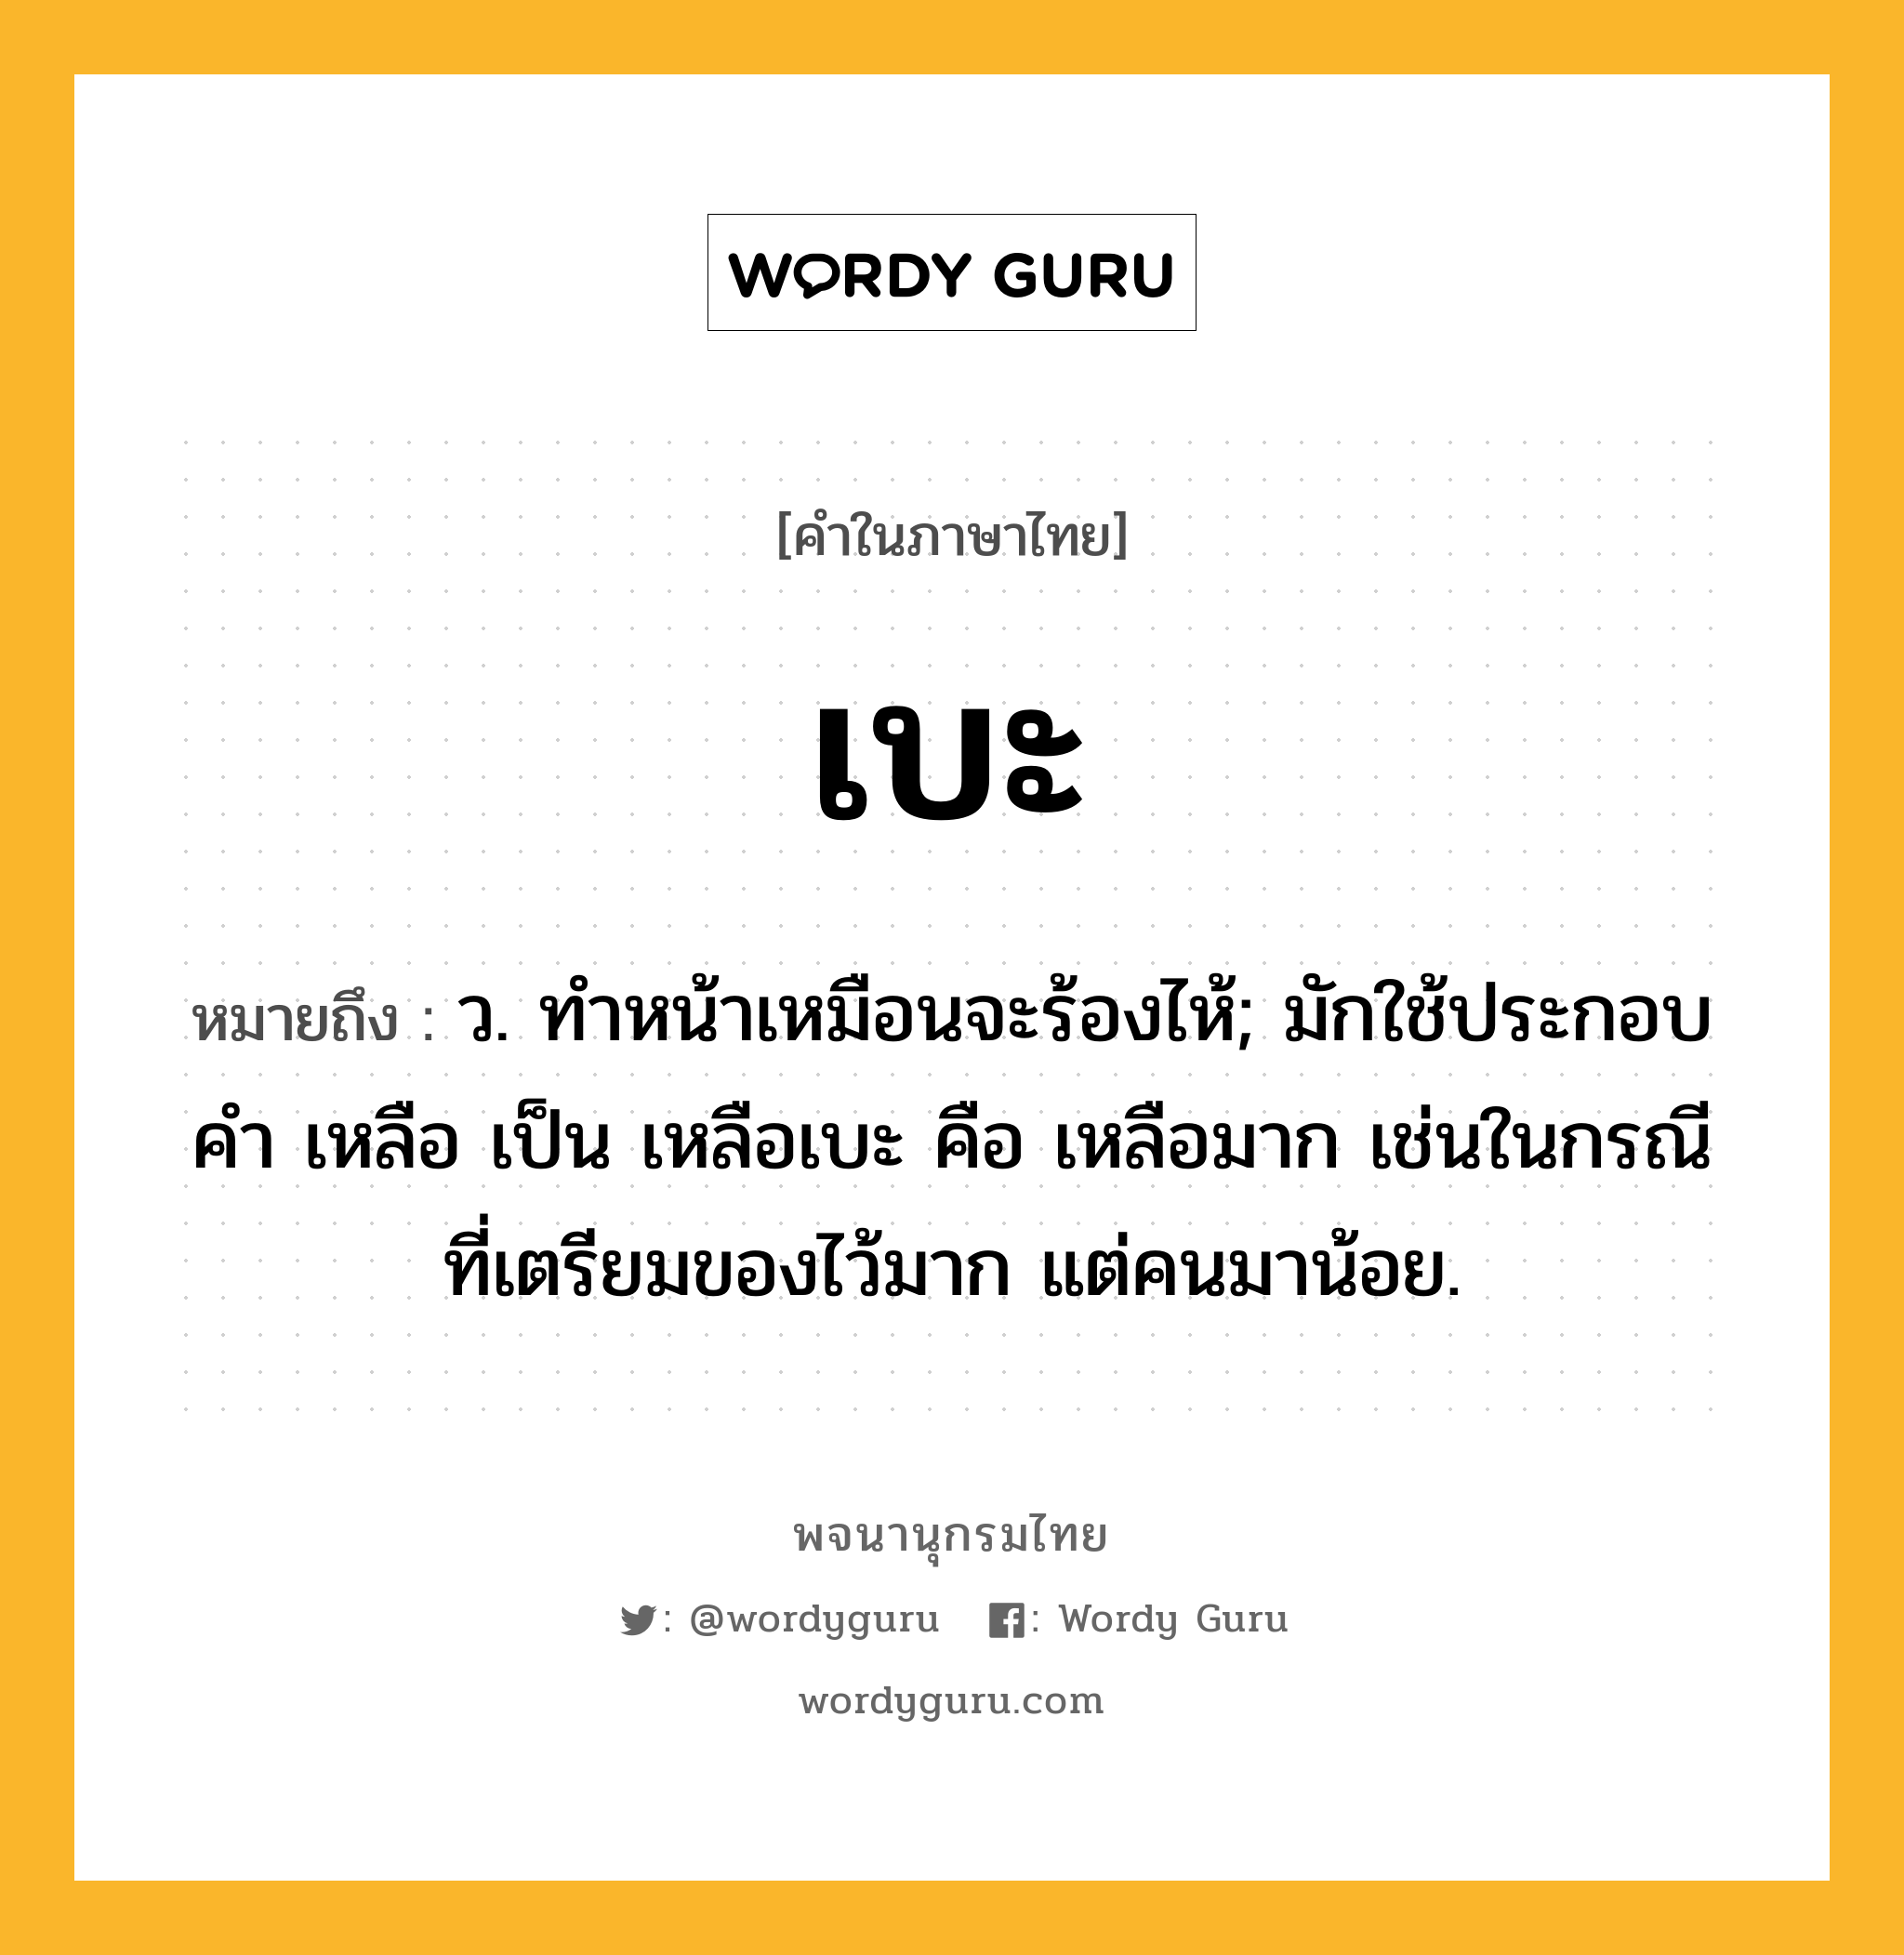 เบะ ความหมาย หมายถึงอะไร?, คำในภาษาไทย เบะ หมายถึง ว. ทําหน้าเหมือนจะร้องไห้; มักใช้ประกอบคํา เหลือ เป็น เหลือเบะ คือ เหลือมาก เช่นในกรณีที่เตรียมของไว้มาก แต่คนมาน้อย.